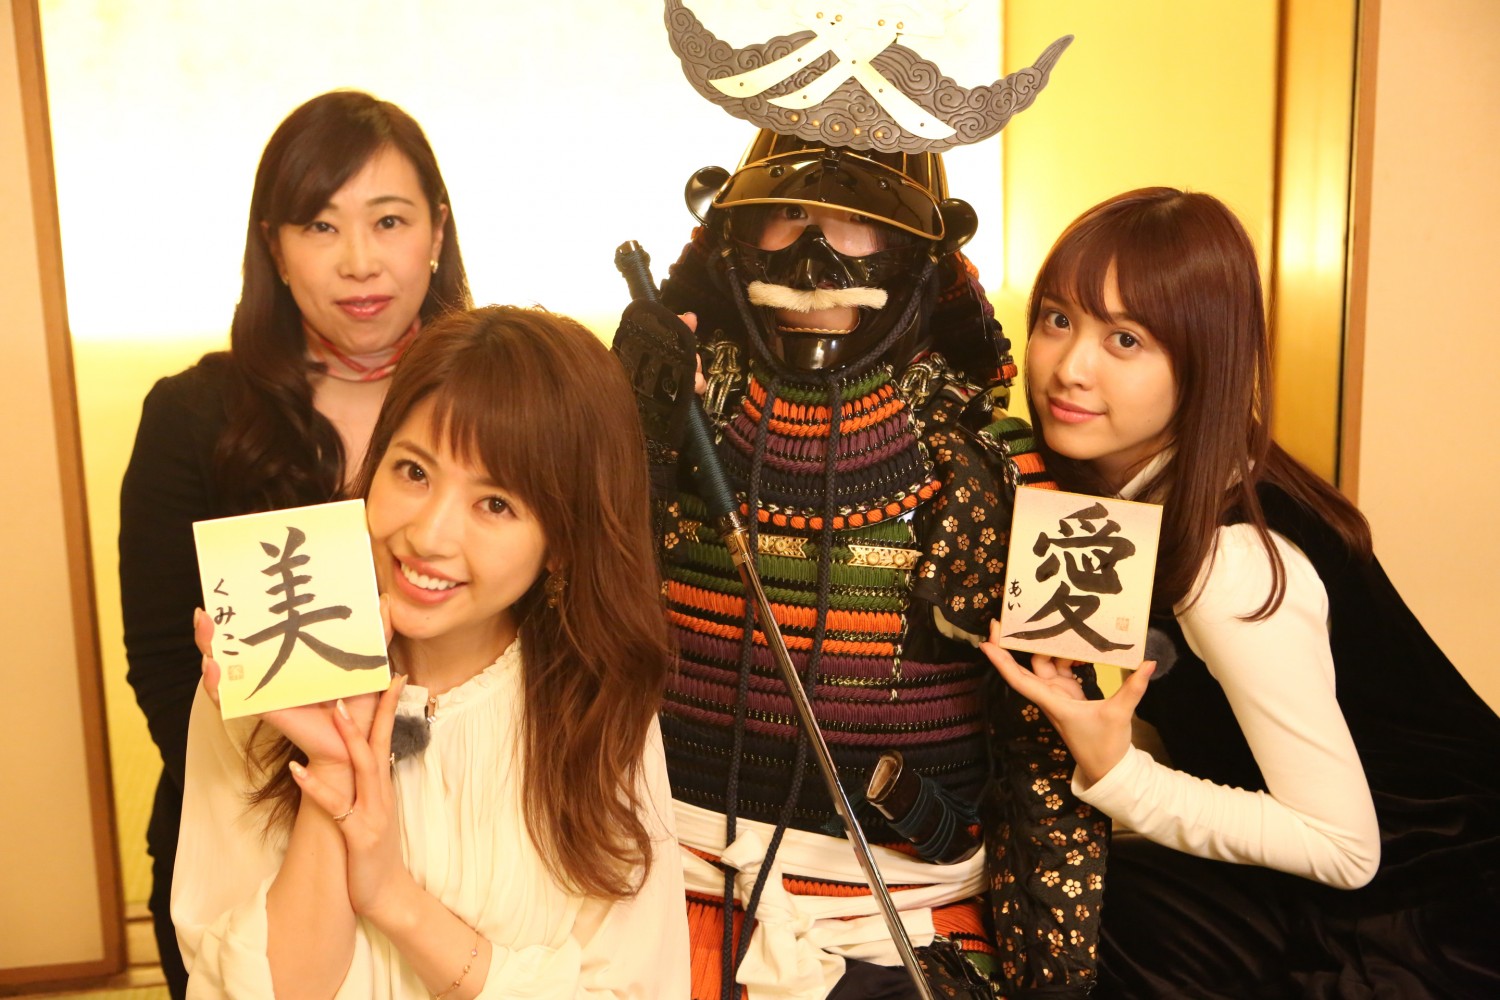 “Samurai Museum” in Shinjuku Has Everything from Samurai Costume, Katana, to Fighting Performance!